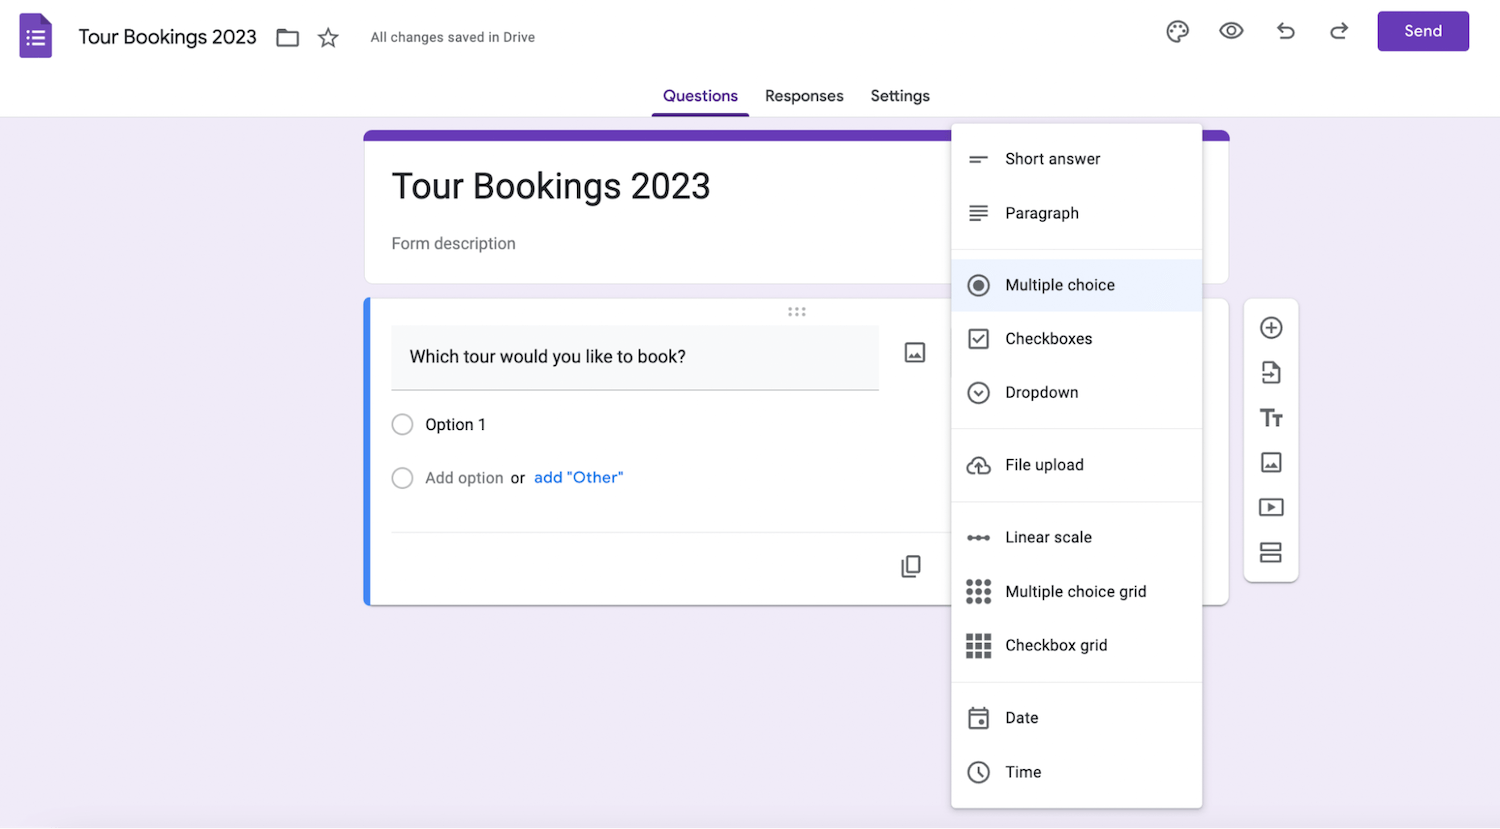 Google Sheets: Tour Bookings form description